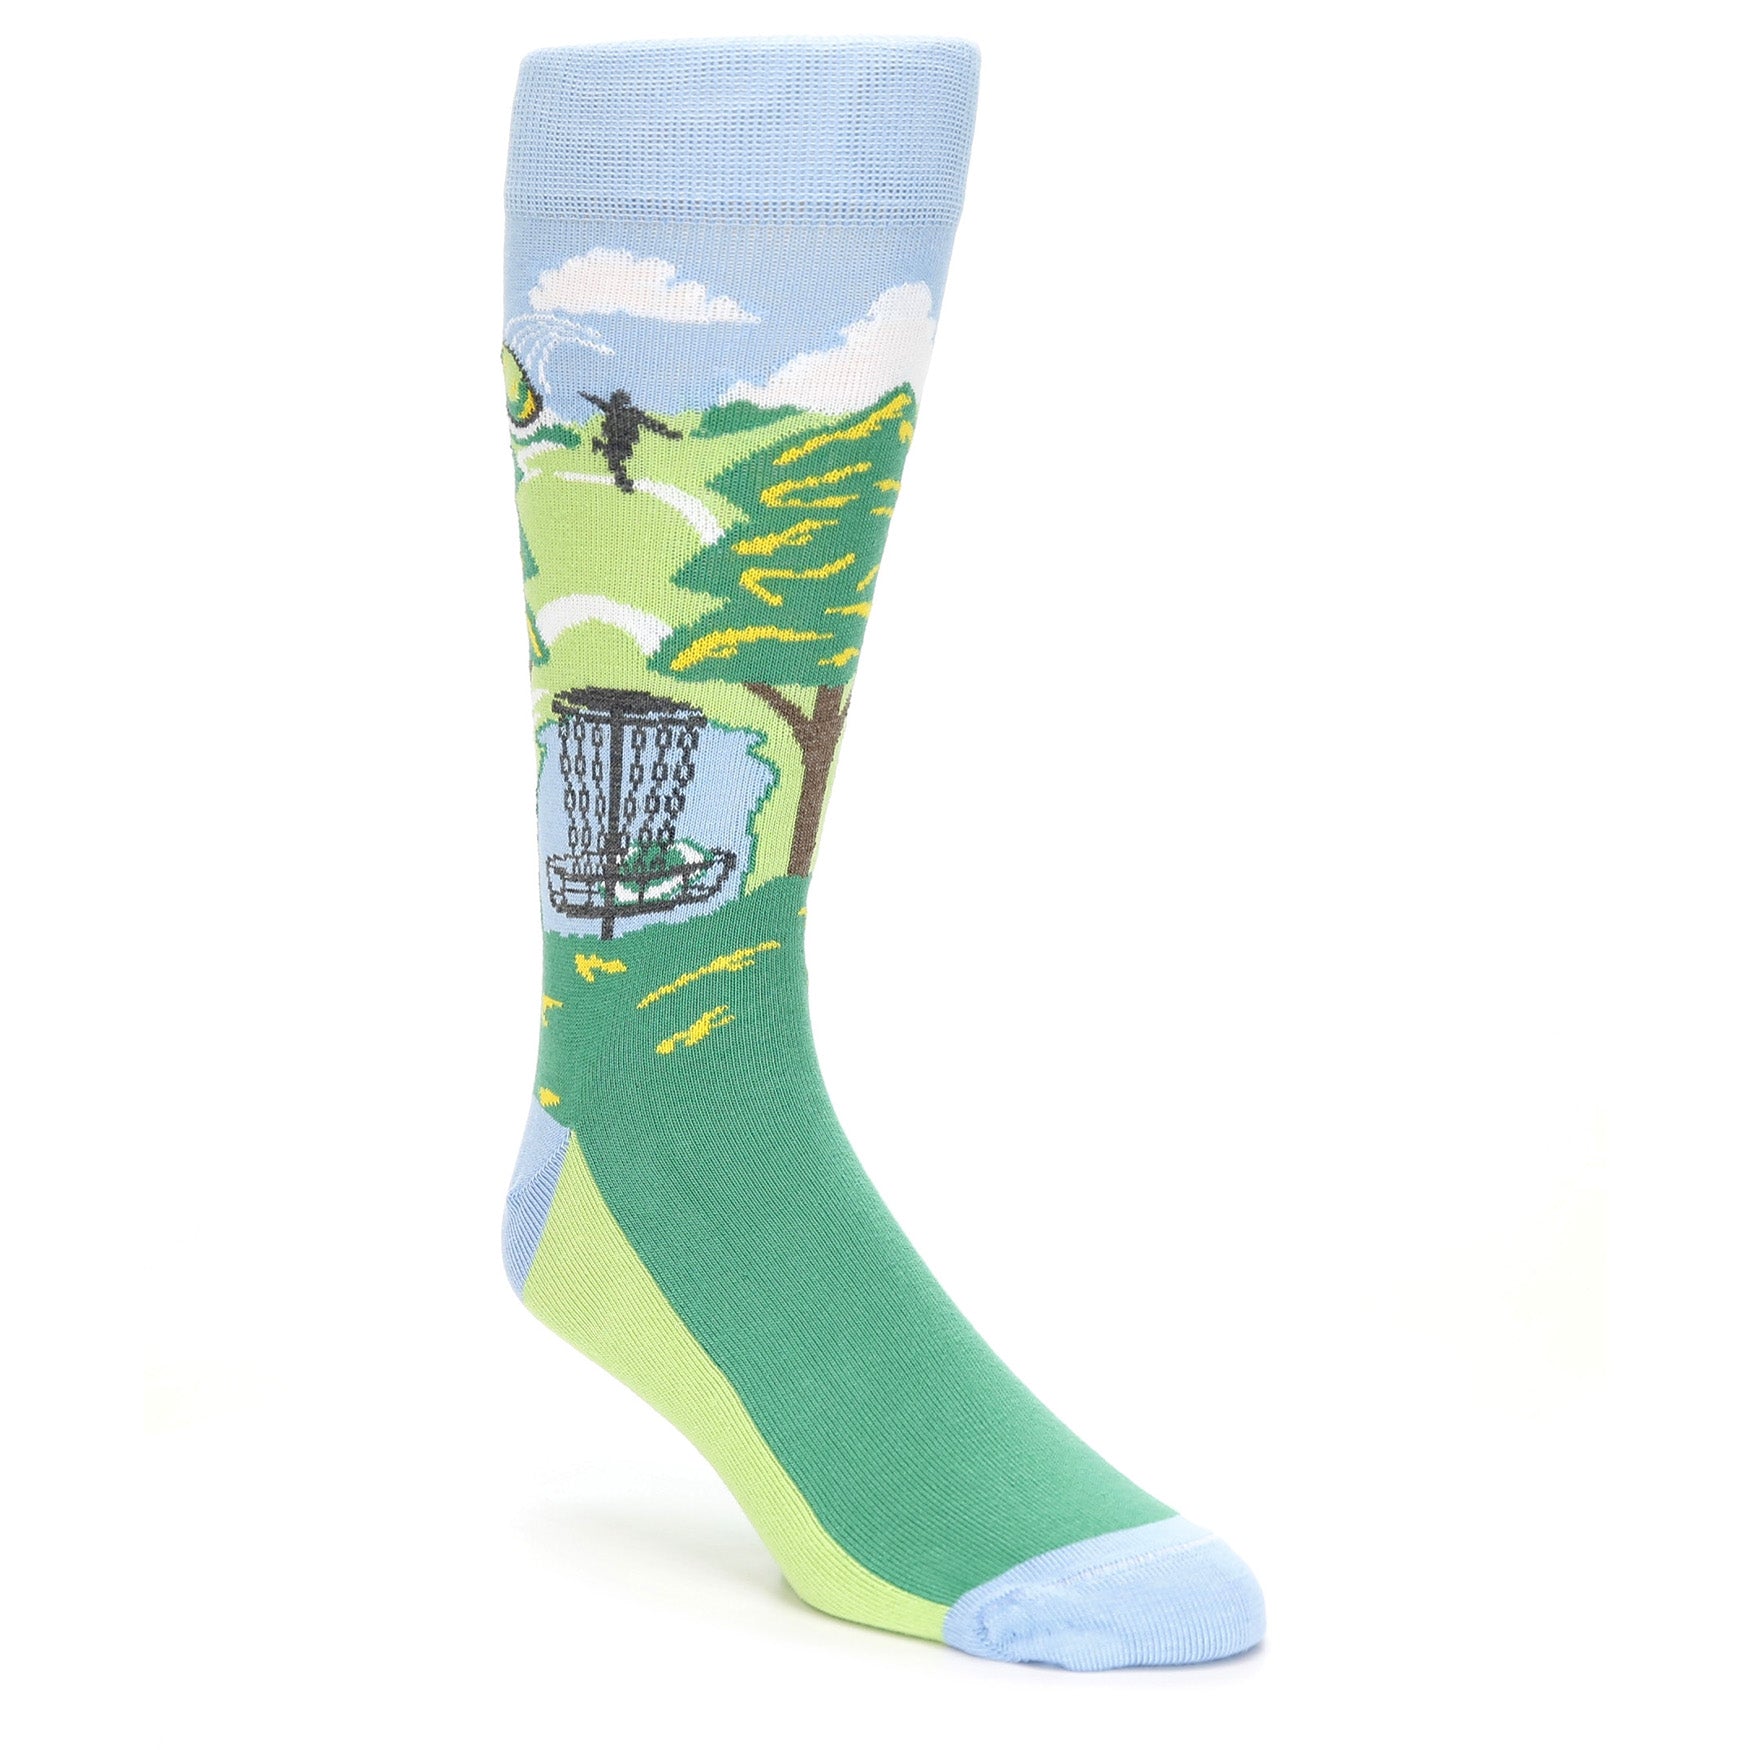 Disc Golf Socks - USA Made - Men's Novelty Dress Socks